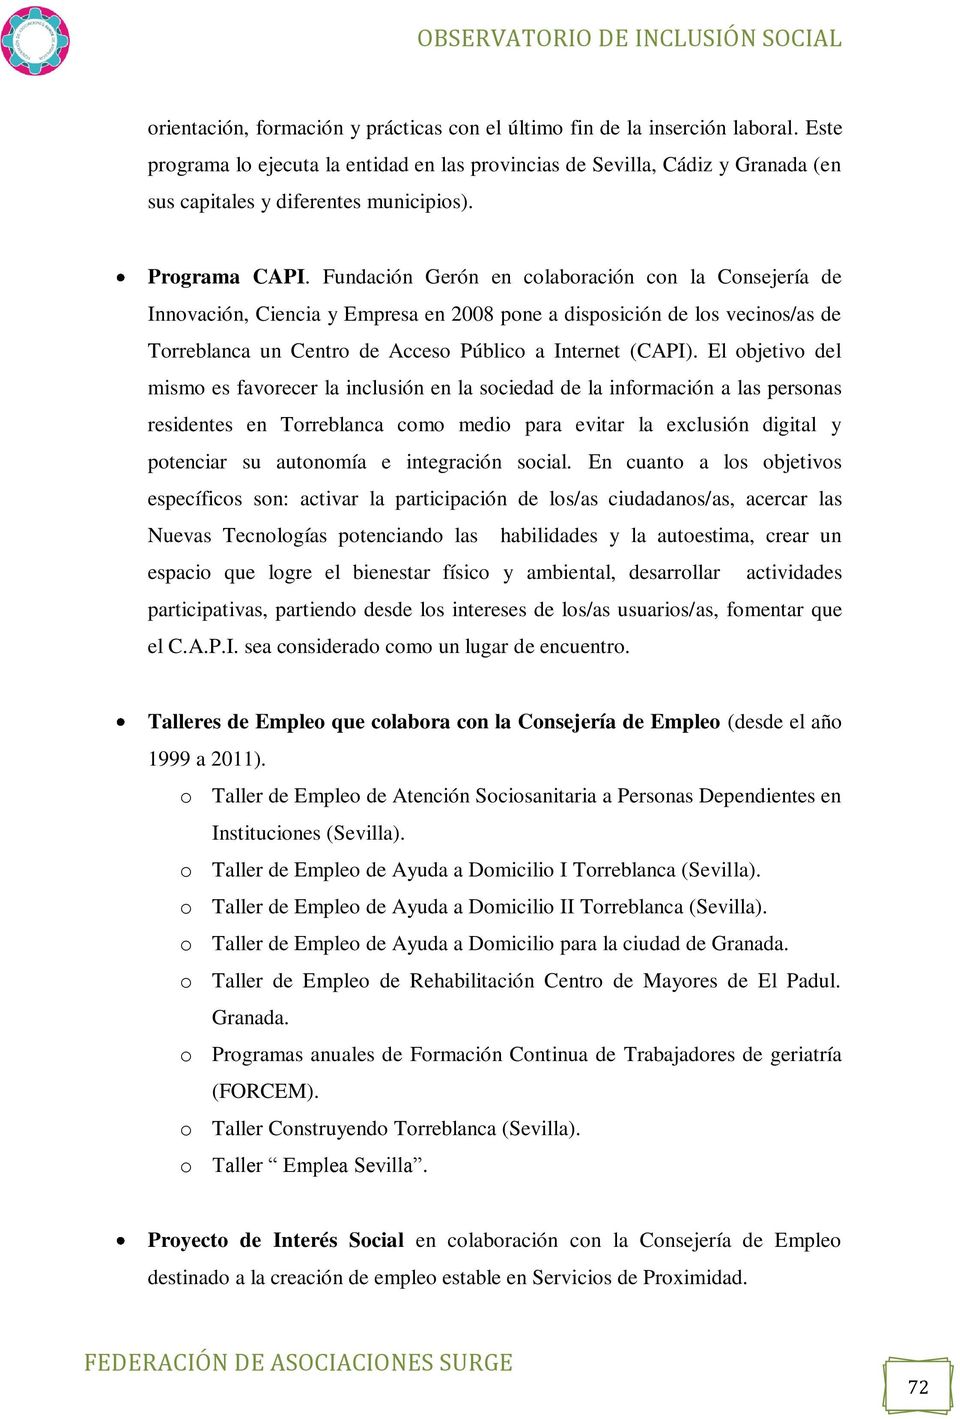 Fundación Gerón en colaboración con la Consejería de Innovación, Ciencia y Empresa en 2008 pone a disposición de los vecinos/as de Torreblanca un Centro de Acceso Público a Internet (CAPI).